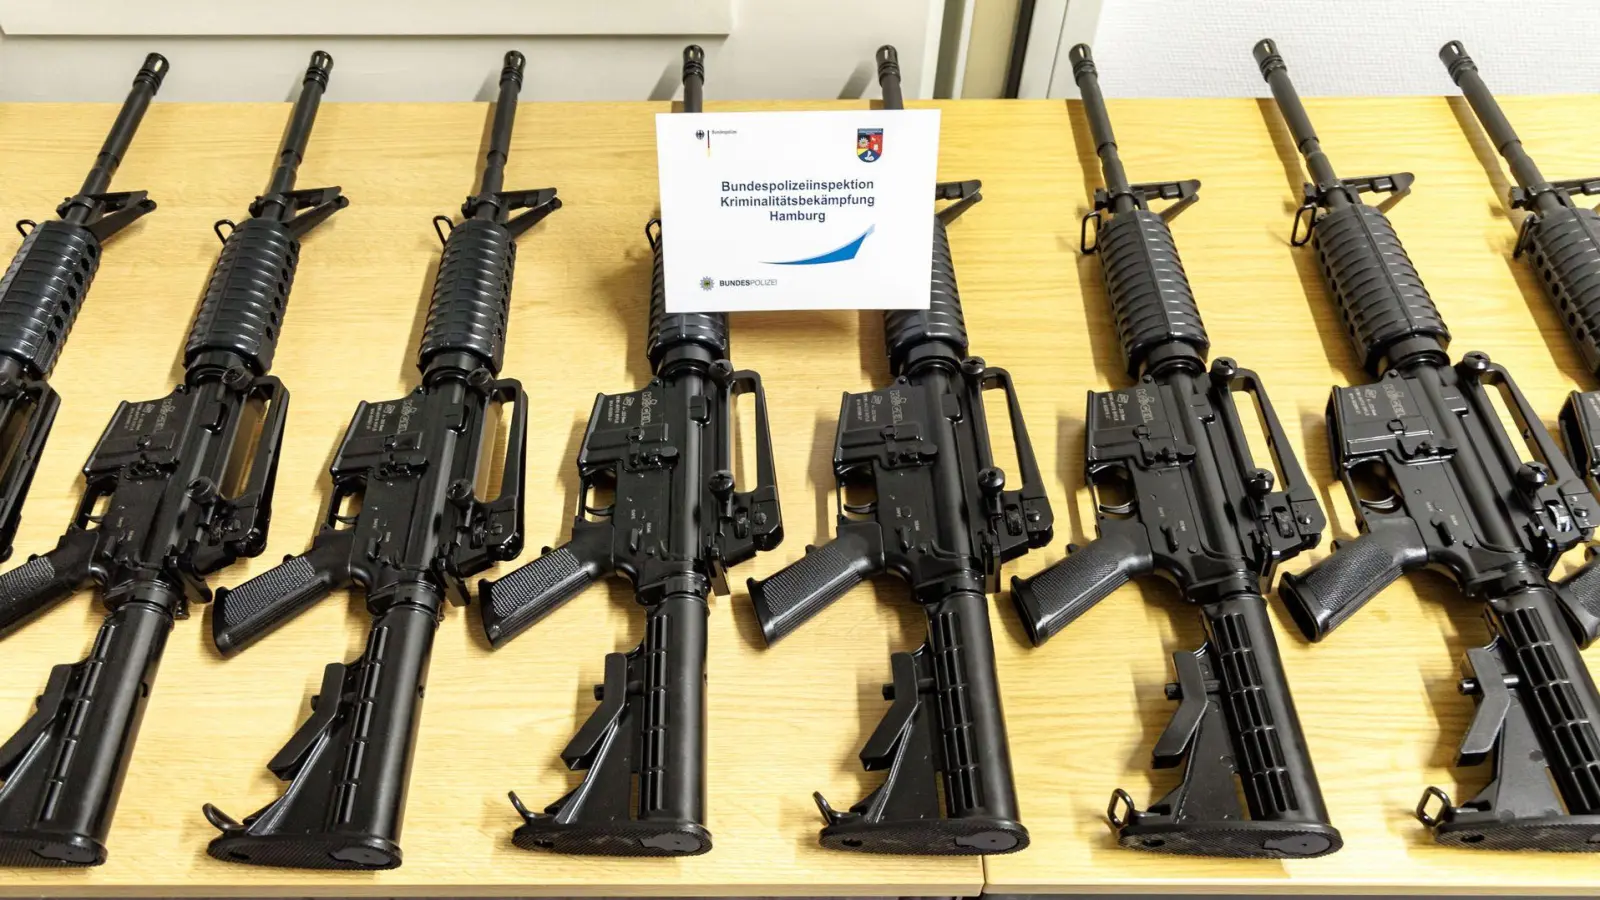 Sichergestellte Schusswaffen aus dem Diebstahl werden in Hamburg präsentiert. (Foto: Markus Scholz/dpa)